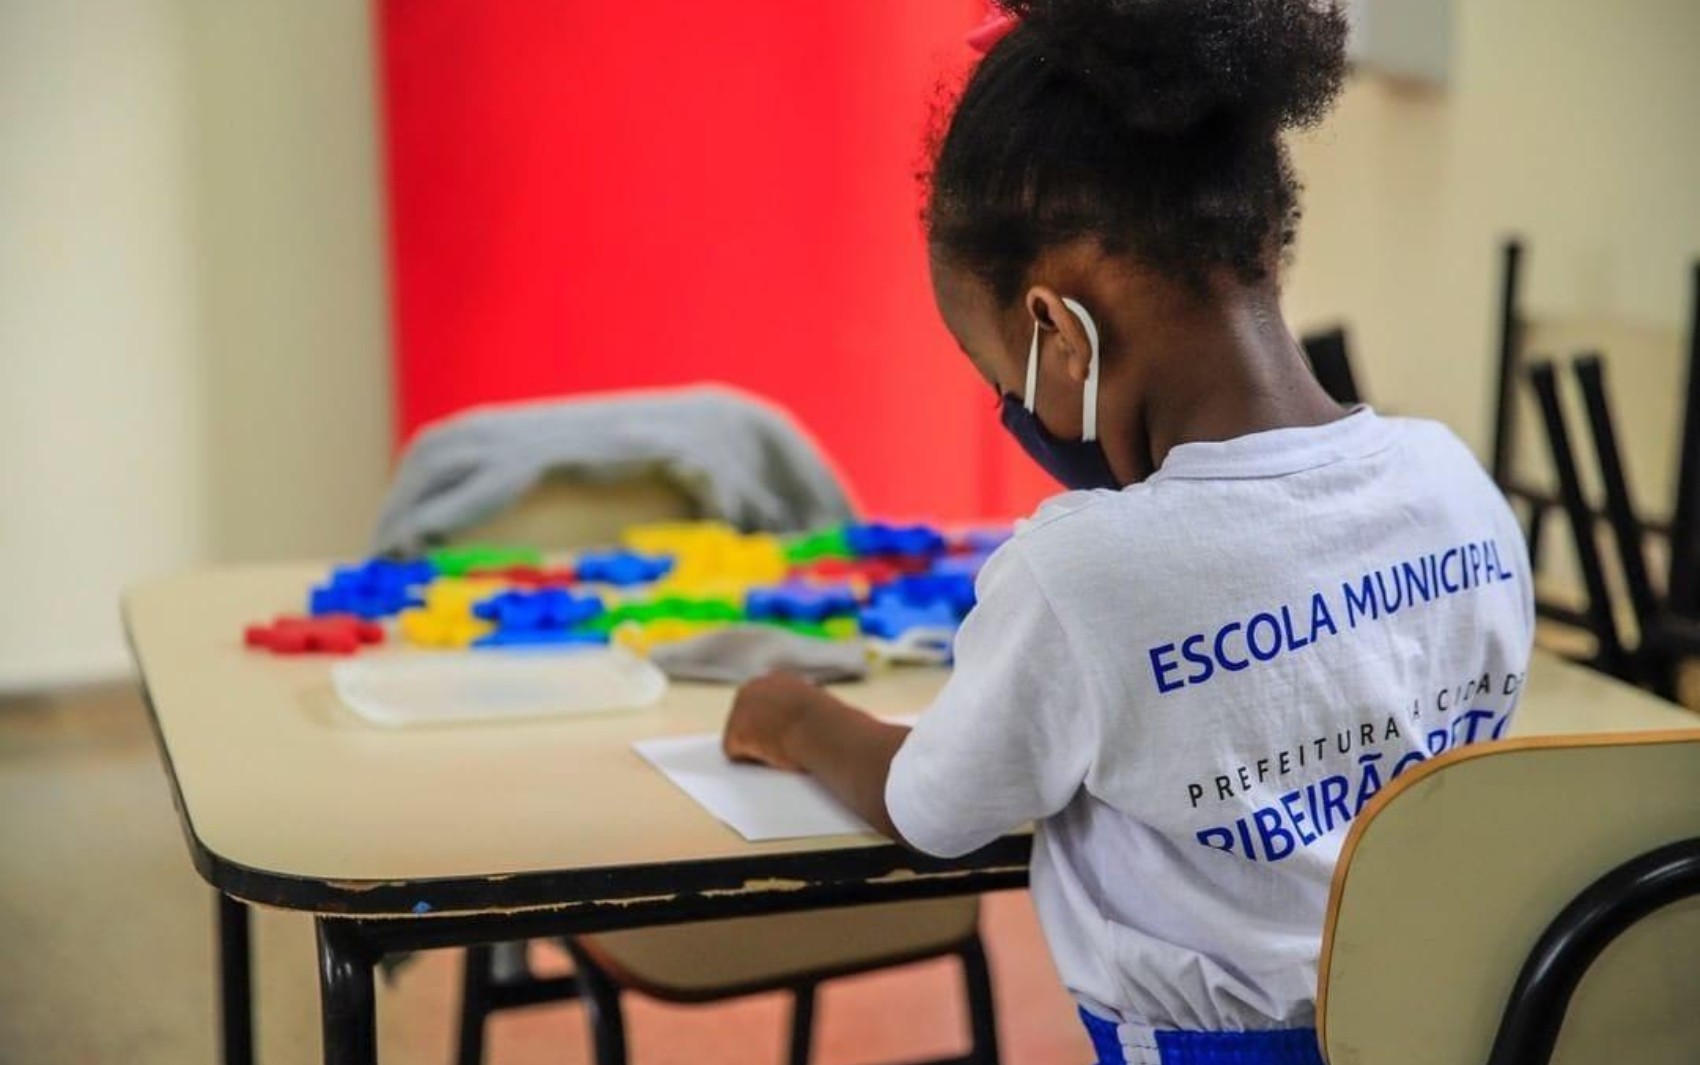 Secretaria da Educação abre cadastro para atender crianças durante férias de julho em Ribeirão Preto, SP; veja como fazer inscriçãoon junho 10, 2023 at 6:46 pm